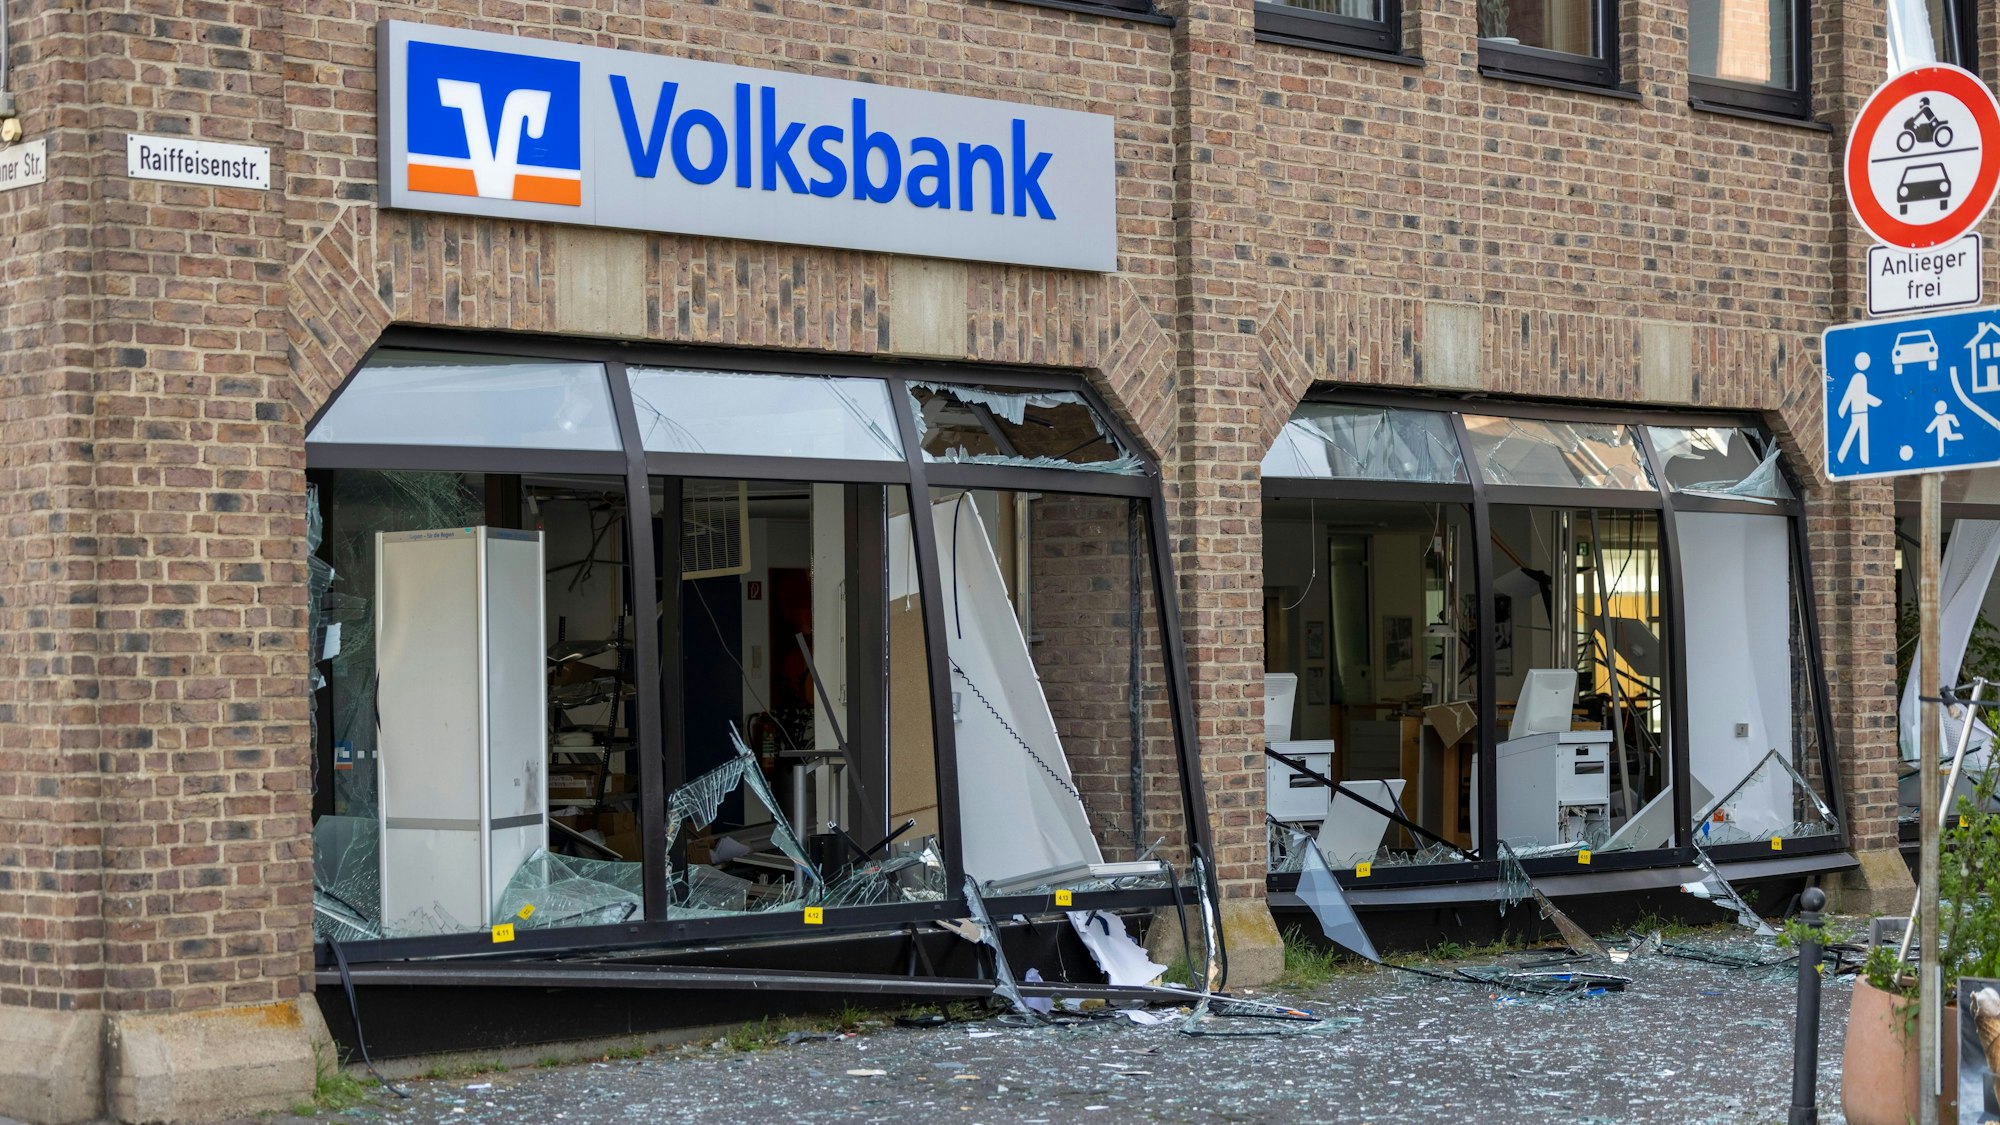 Unbekannte hatten am Montagmorgen einen Geldautomaten in einer Bankfiliale in Erftstadt gesprengt. (Foto) Auch in der Nacht auf Dienstag sowie nun in der Nacht auf Mittwoch gab es erneut Sprengungen in NRW.